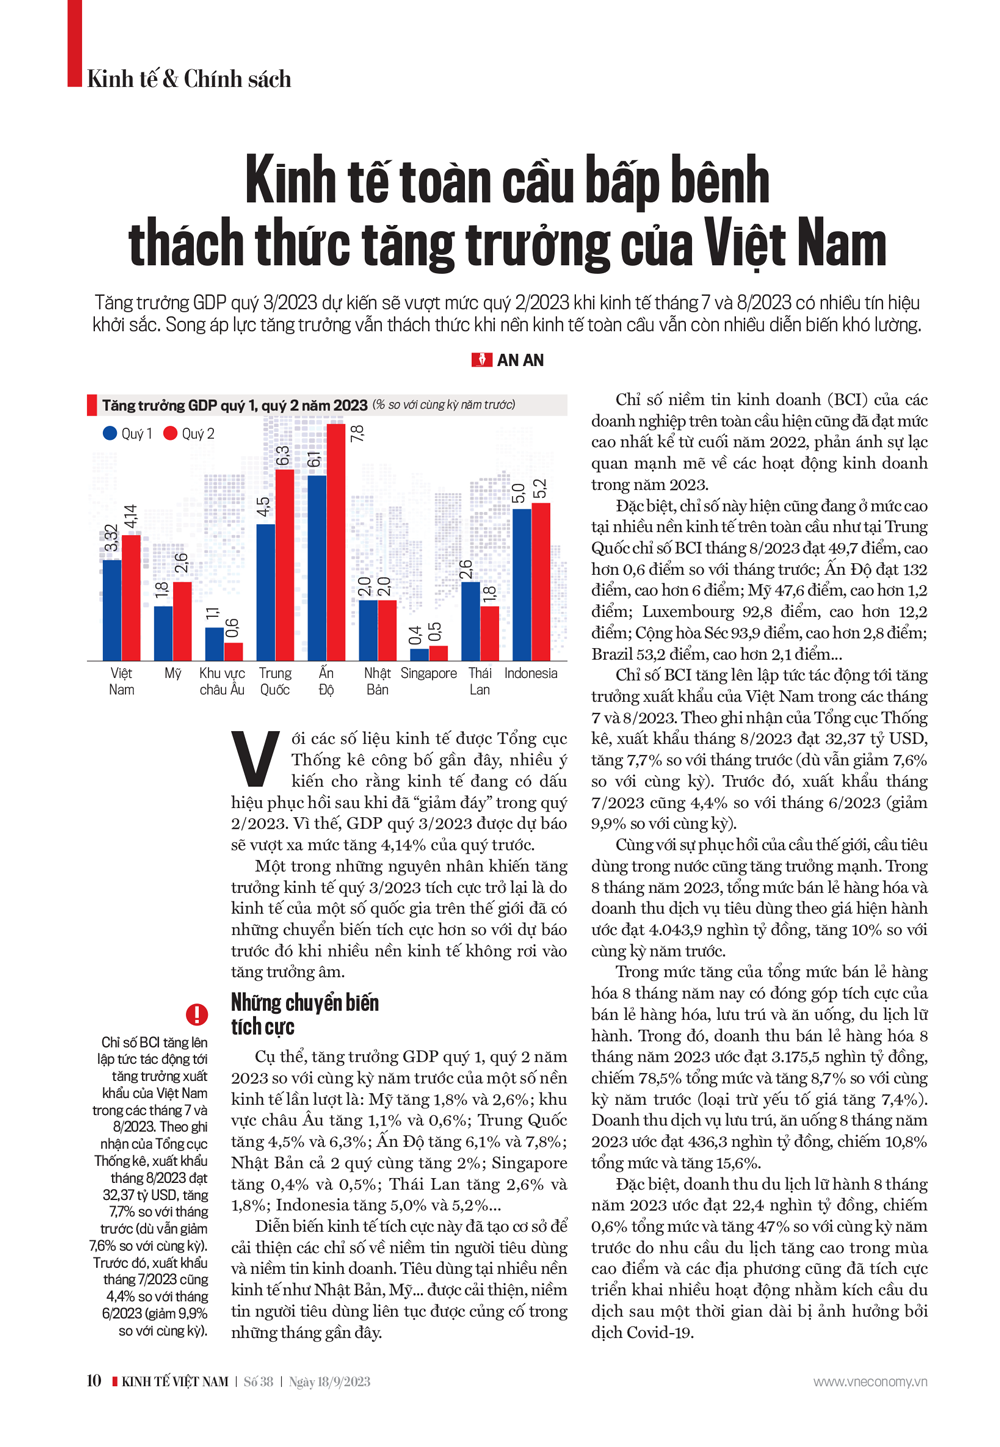 Kinh tế toàn cầu bấp bênh, thách thức tăng trưởng của Việt Nam - Ảnh 3